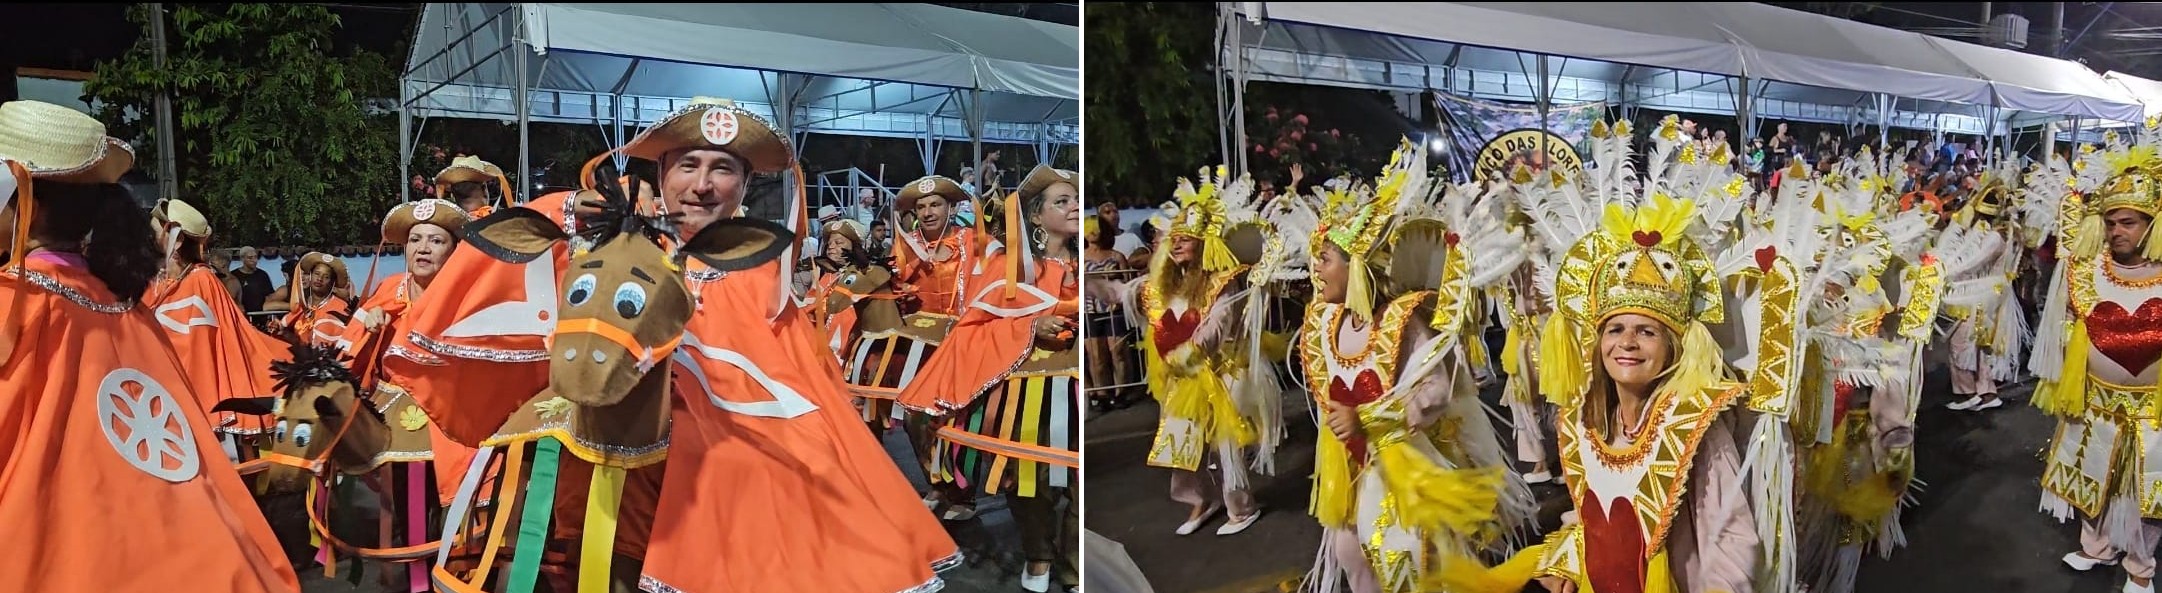 Desfiles competitivos retornaram ao Carnaval de Maricá após 16 anos; veja como ficou o resultado